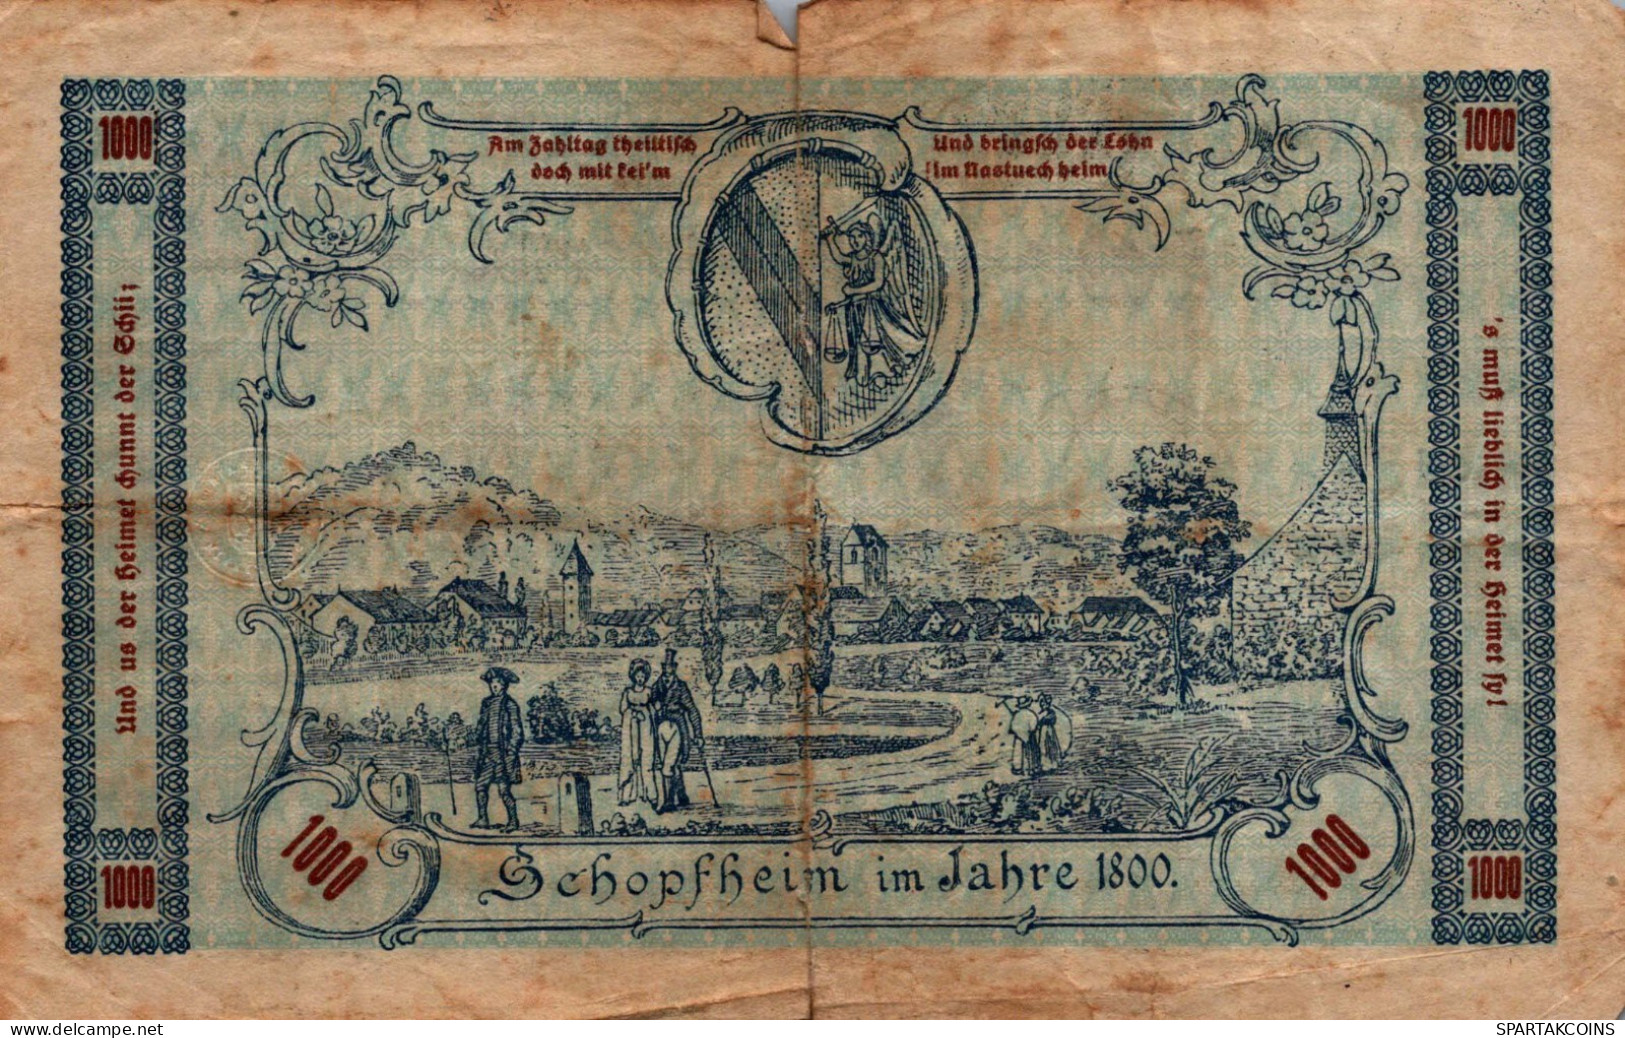 1000 MARK 1922 Stadt SCHOPFHEIM Baden DEUTSCHLAND Notgeld Papiergeld Banknote #PK948 - [11] Emisiones Locales